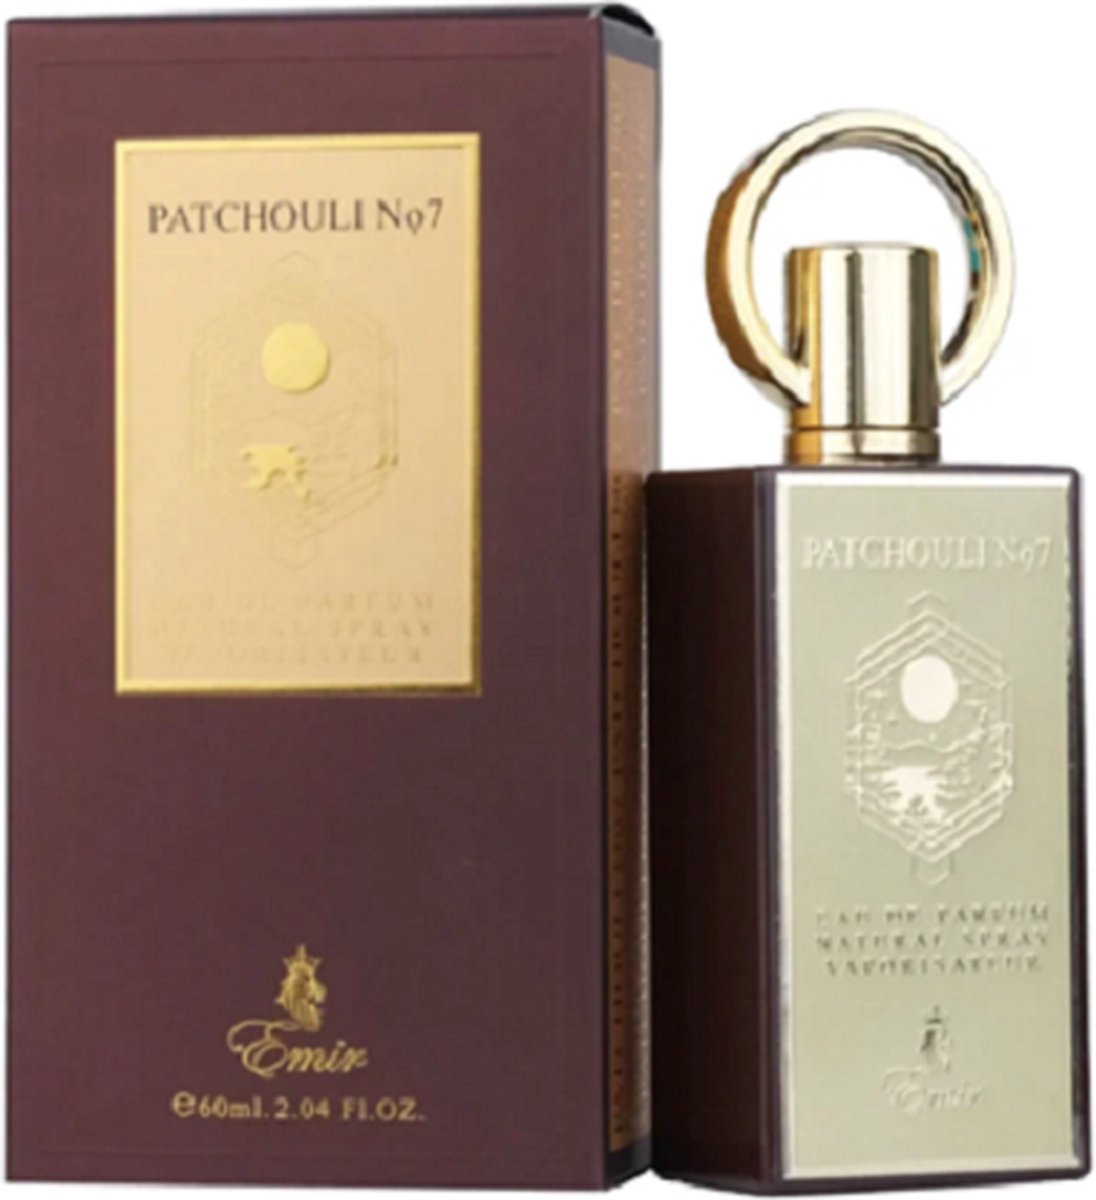 Parfum Arabisch - Emir - Patchouli nr. 7 - eau de parfum spray 100ml. - Verenigde Arabische Emiraten - made in U.A.E